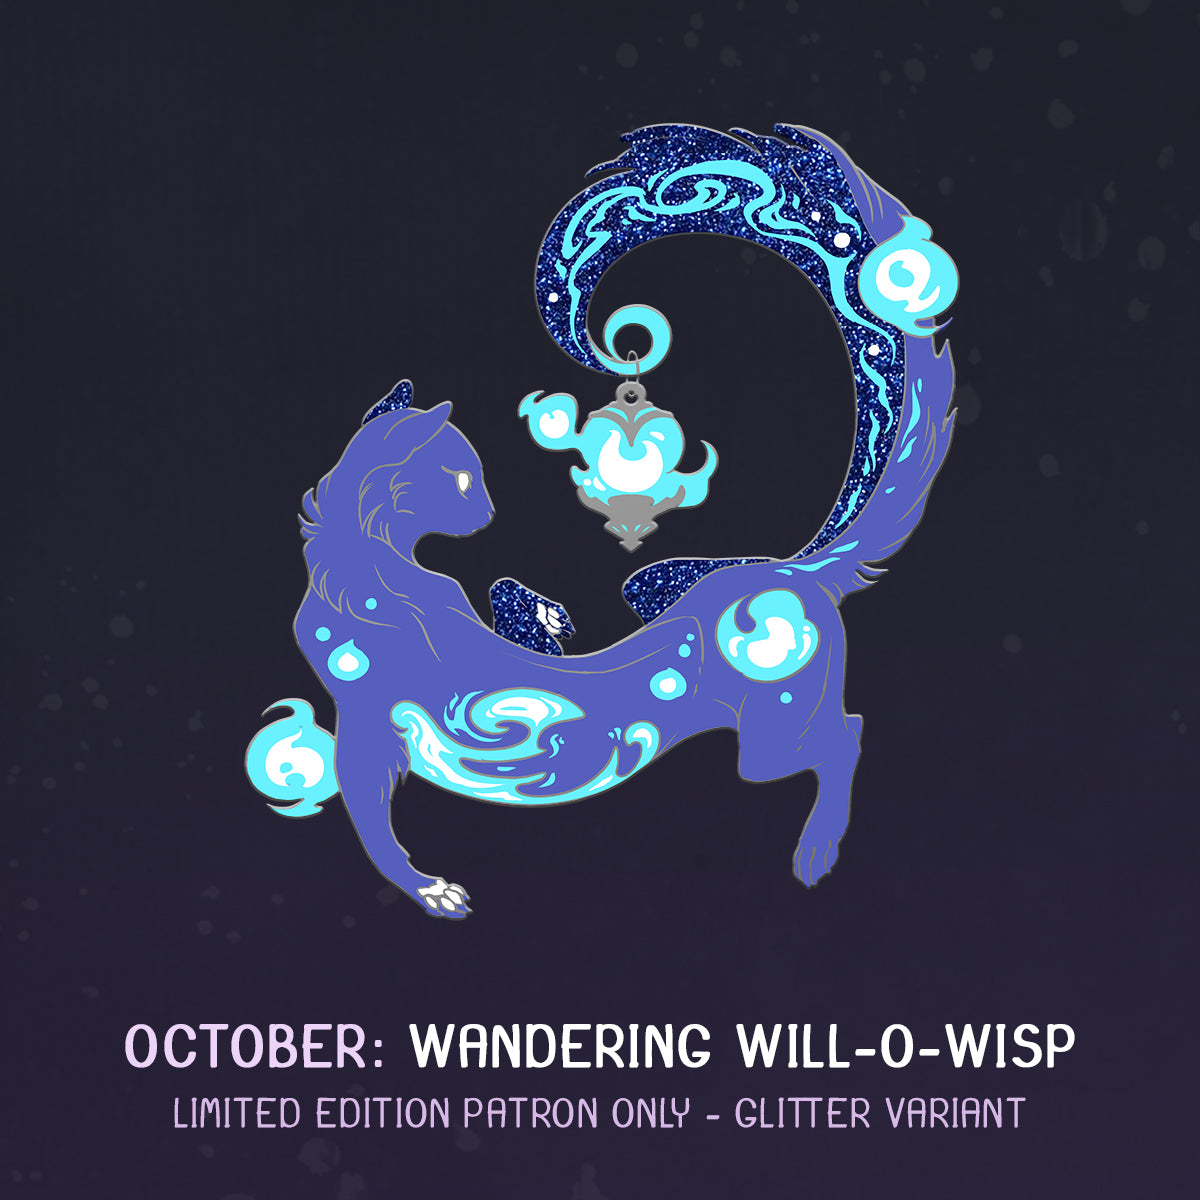 [Mythology] Wandering Will-o'-Wisp [LE Glitter Variant]